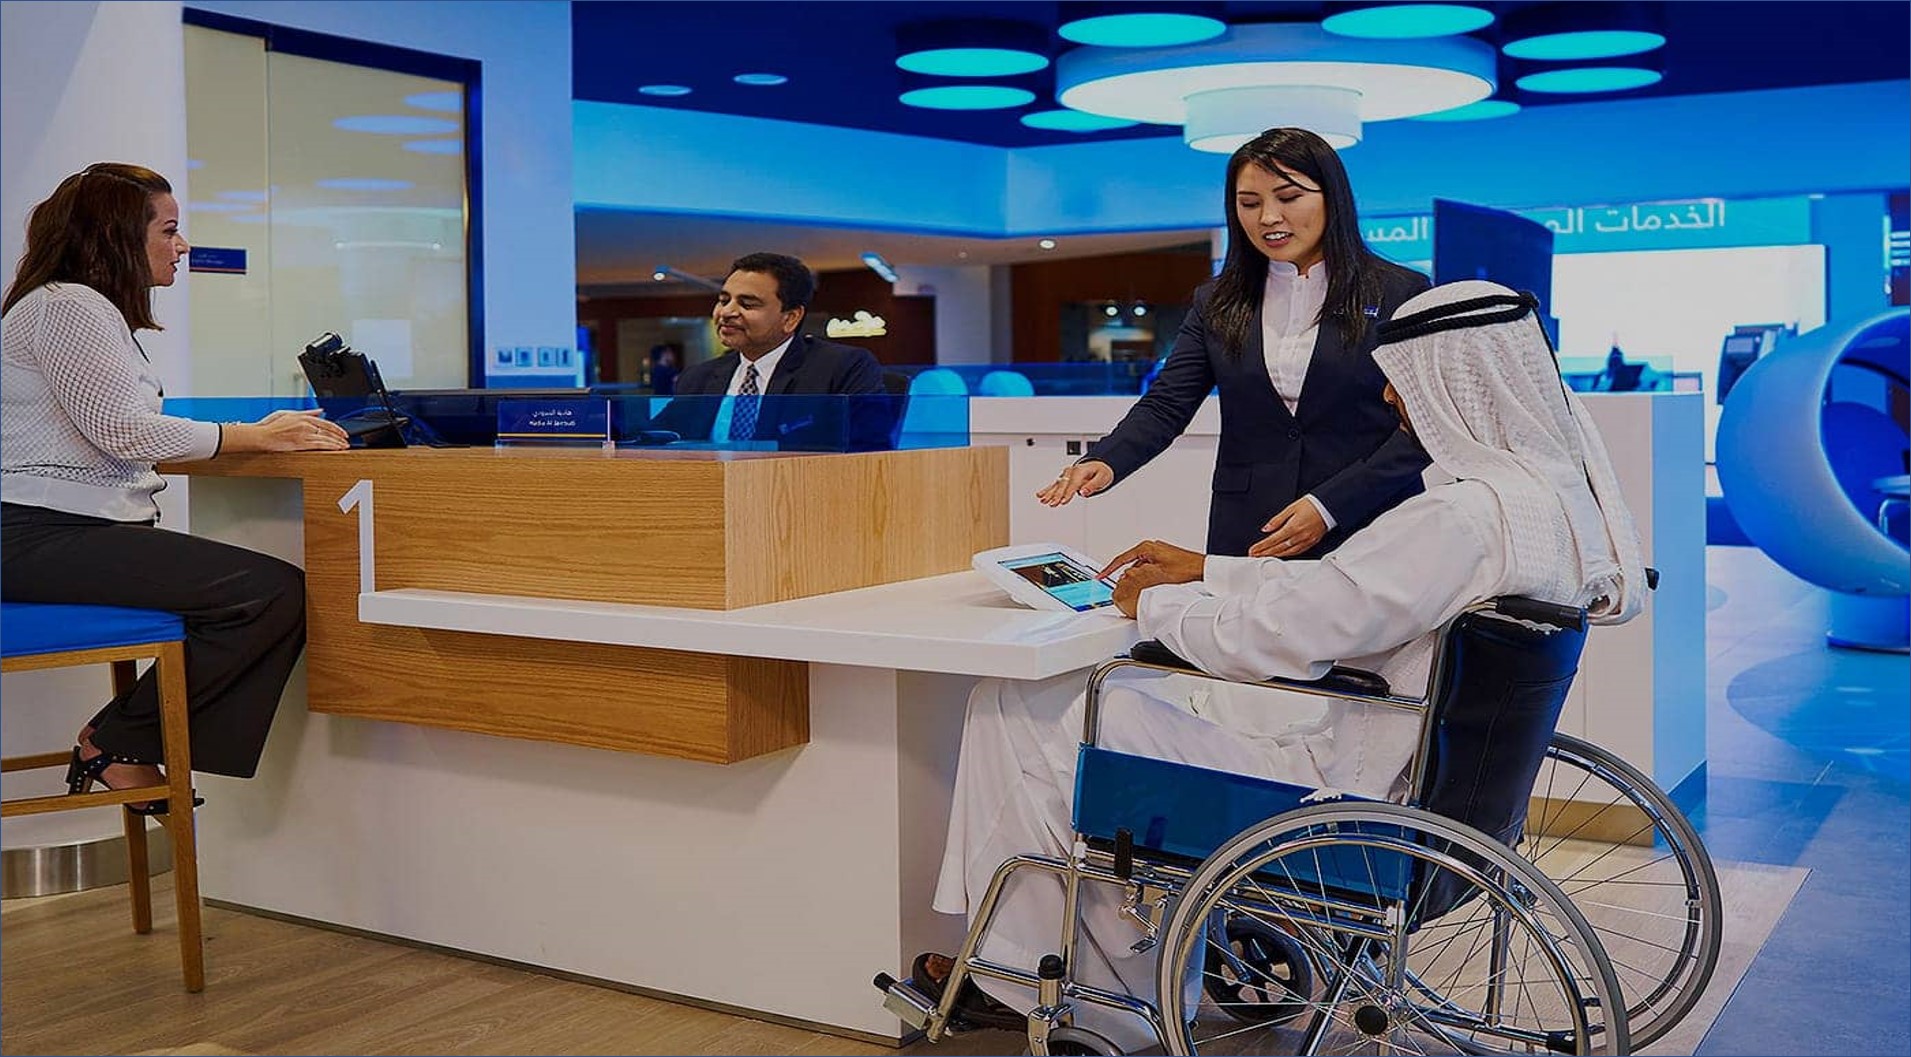 بنك الإمارات دبي الوطني يعلن عن فرص عمل للرجال والنساء